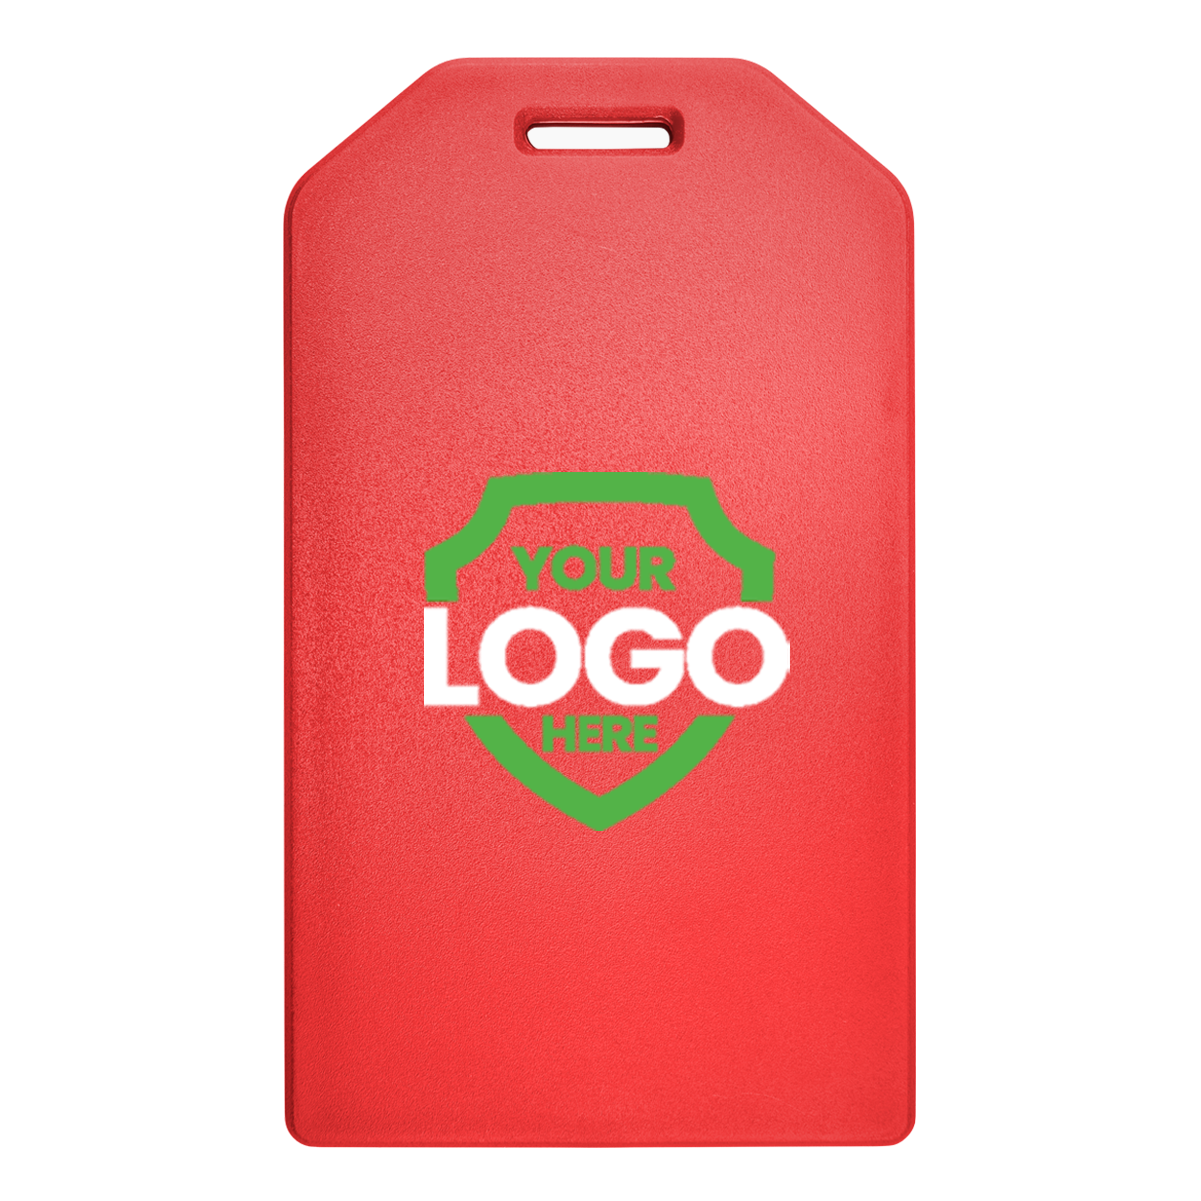 Red Custom Rigid Plastic Luggage Tag Holder with 6" loop 